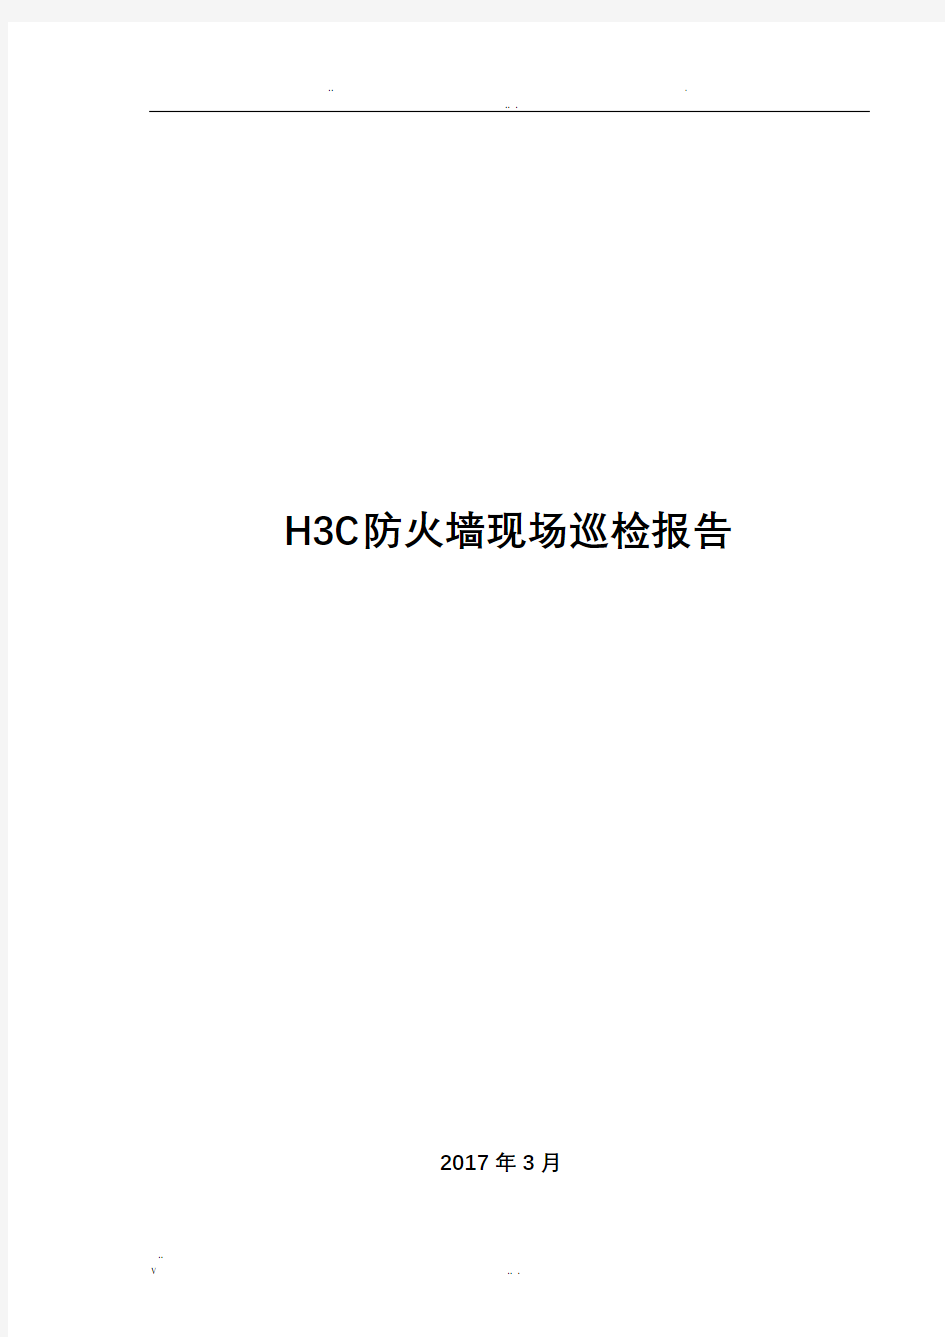 H3C防火墙现场巡检报告